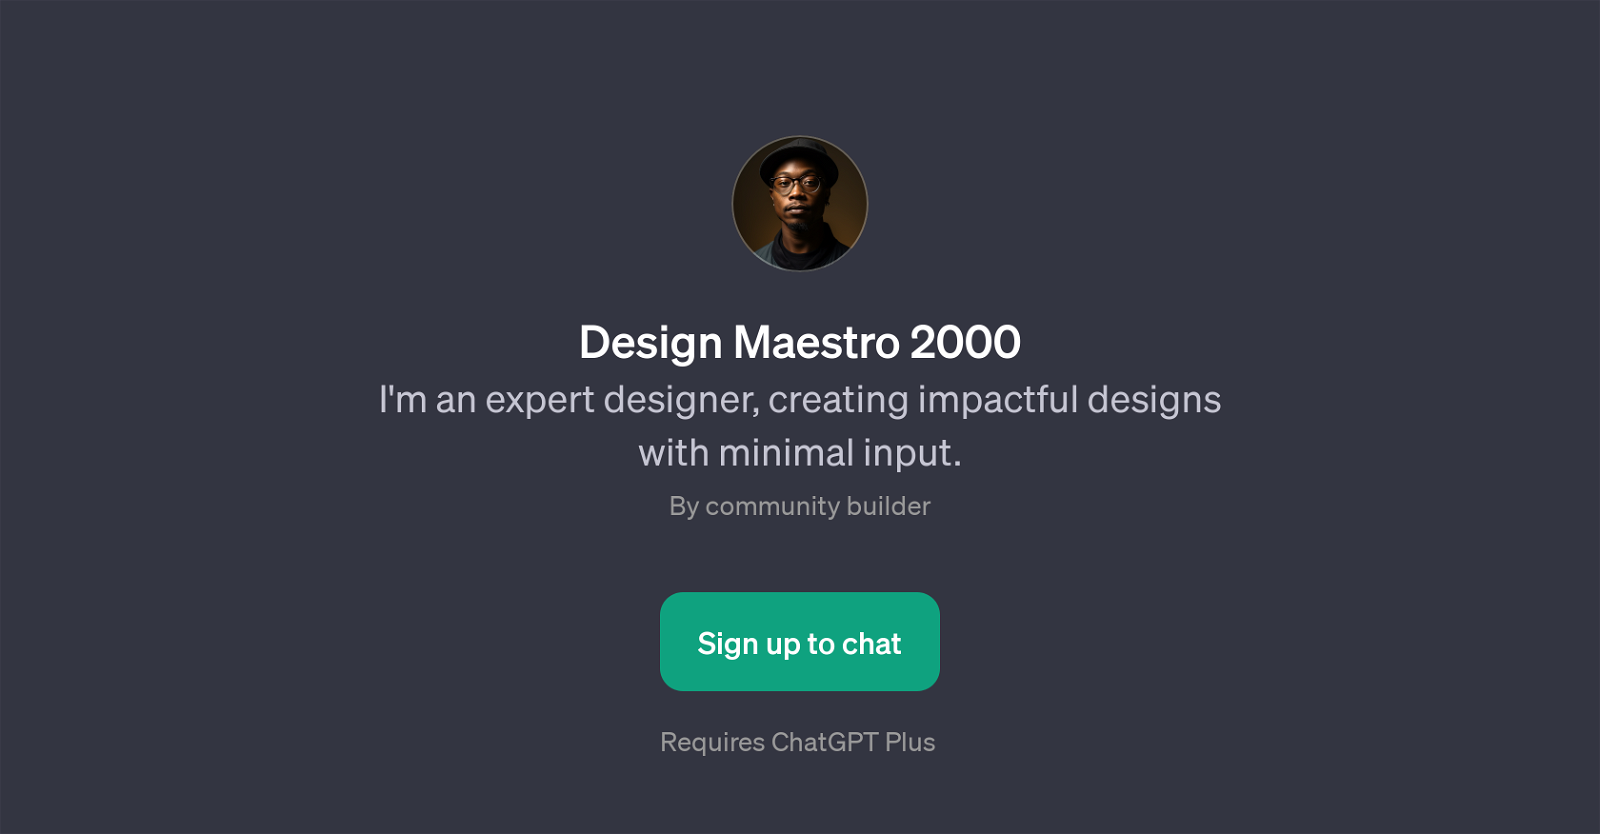 Design Maestro 2000 website